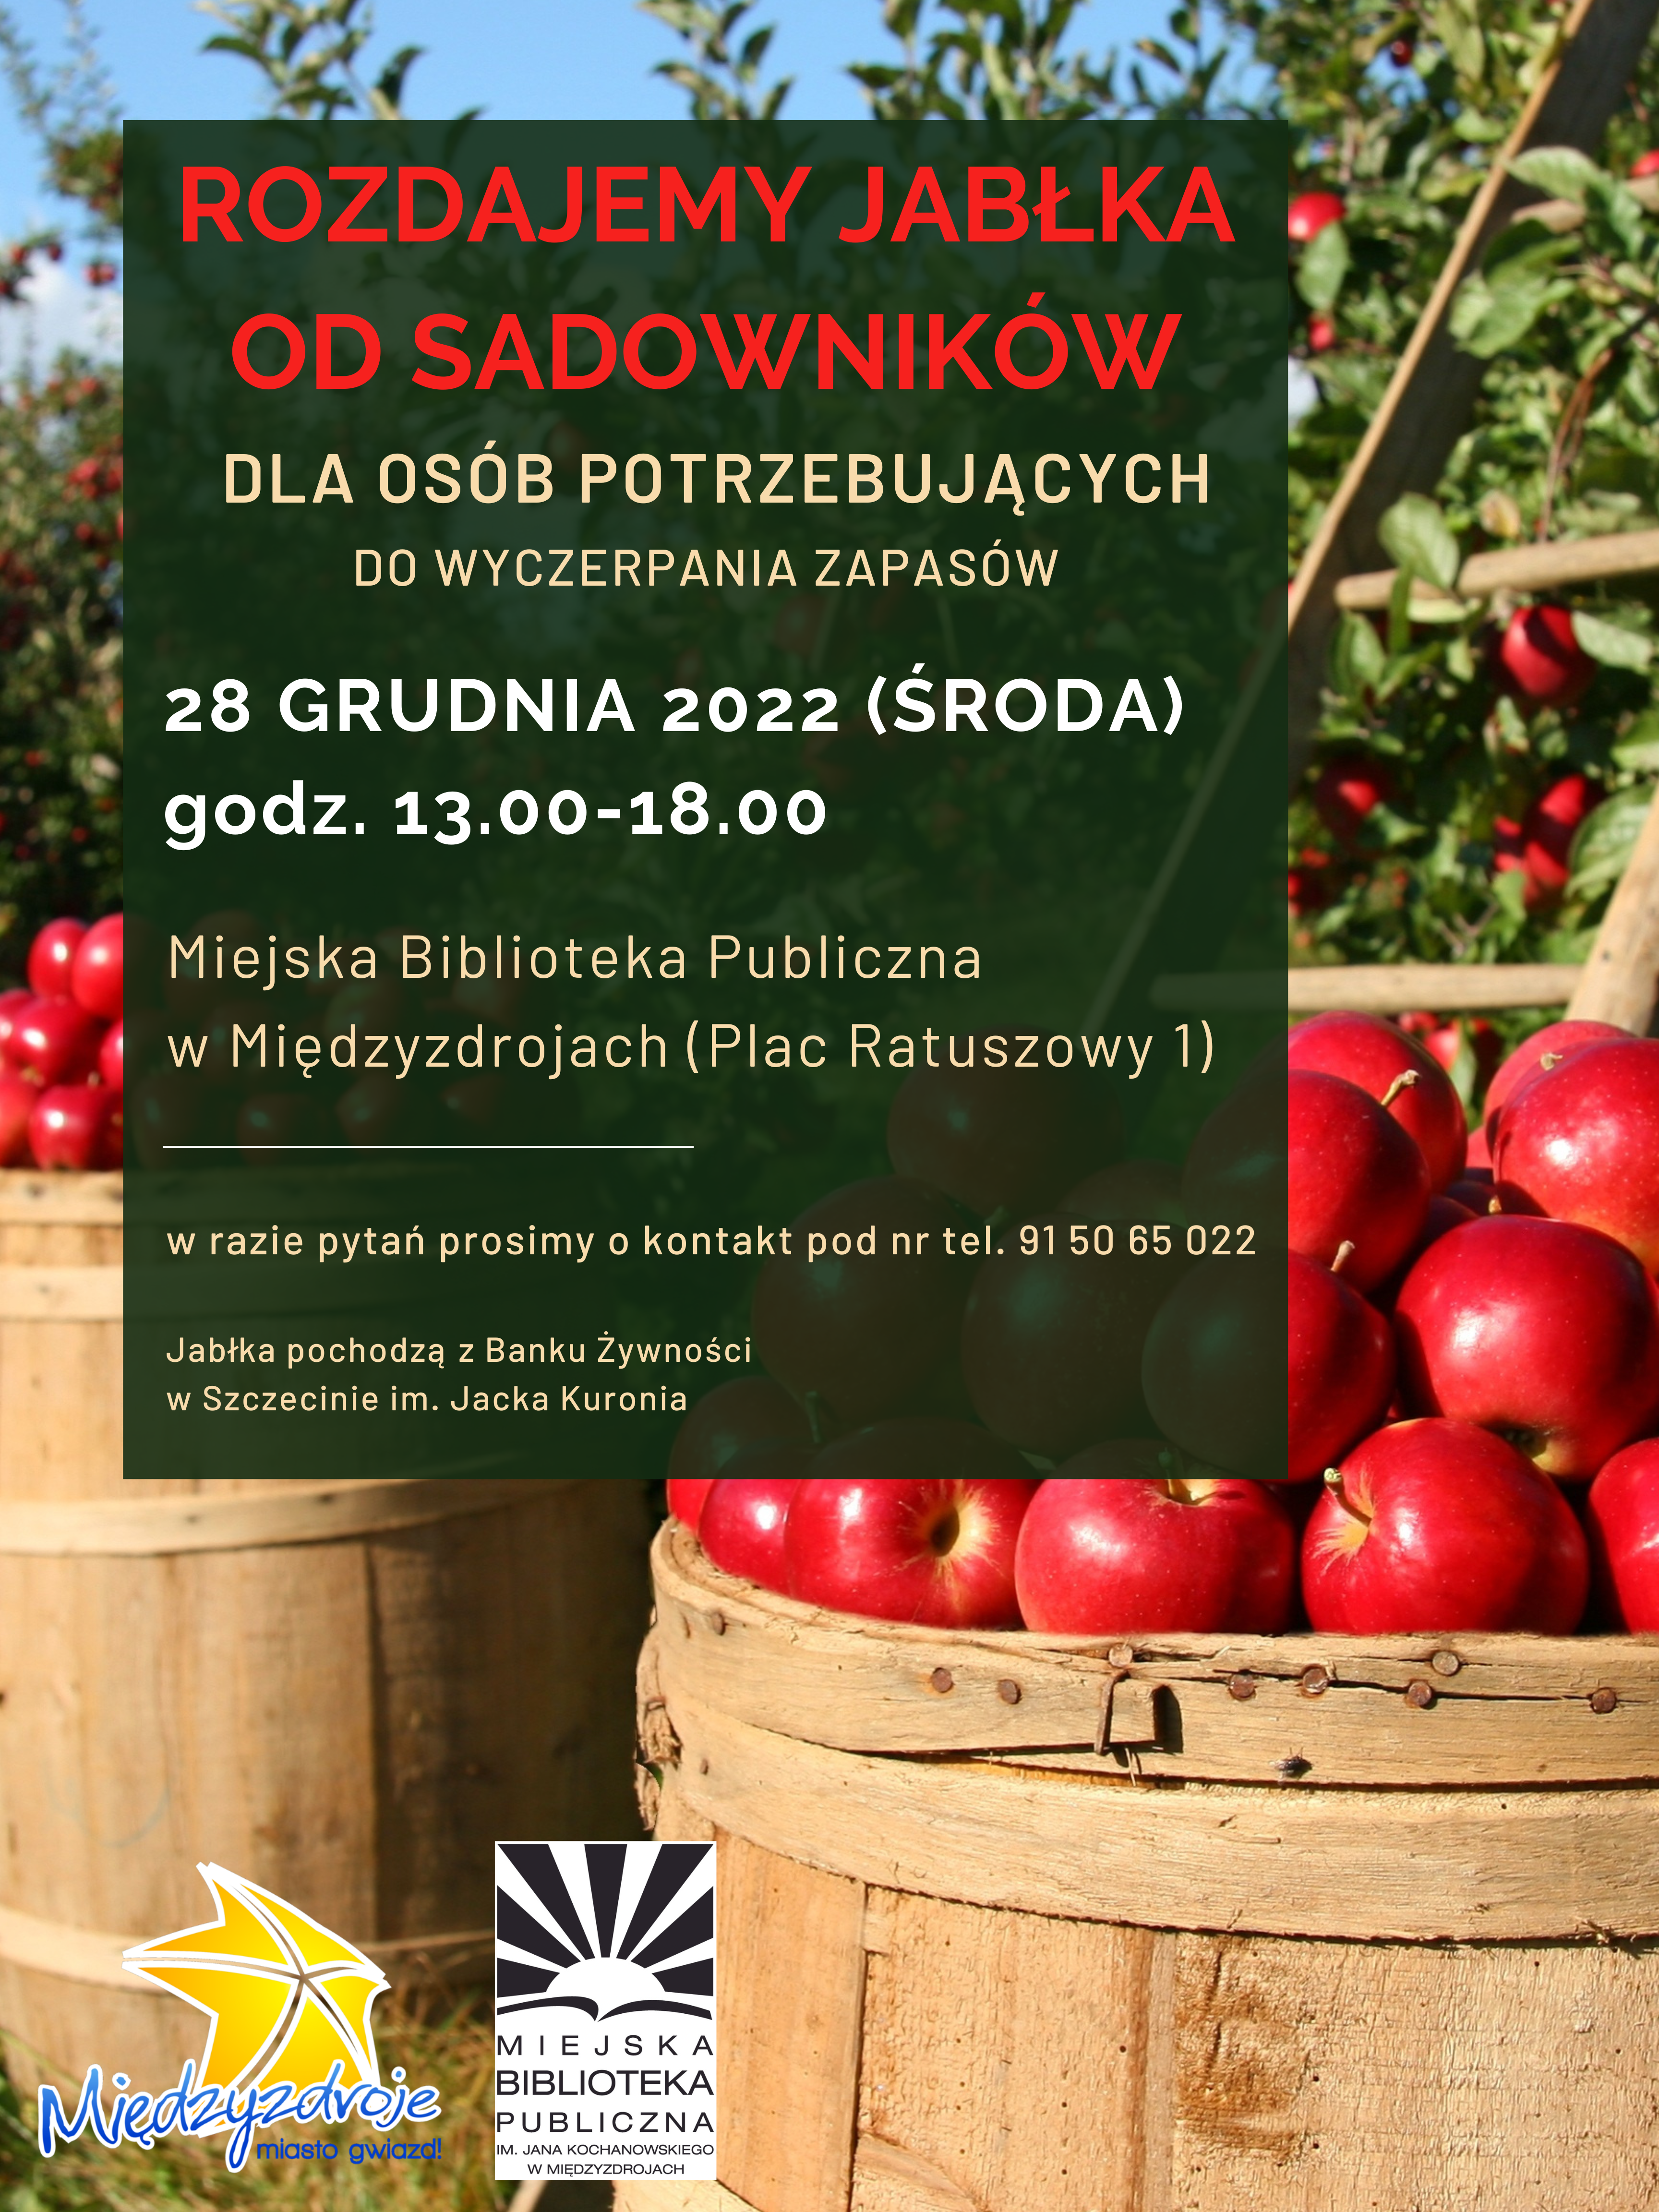 Rozdajemy jabłka od sadowników! 18-19 listopada 2022 r. - zapowiedź